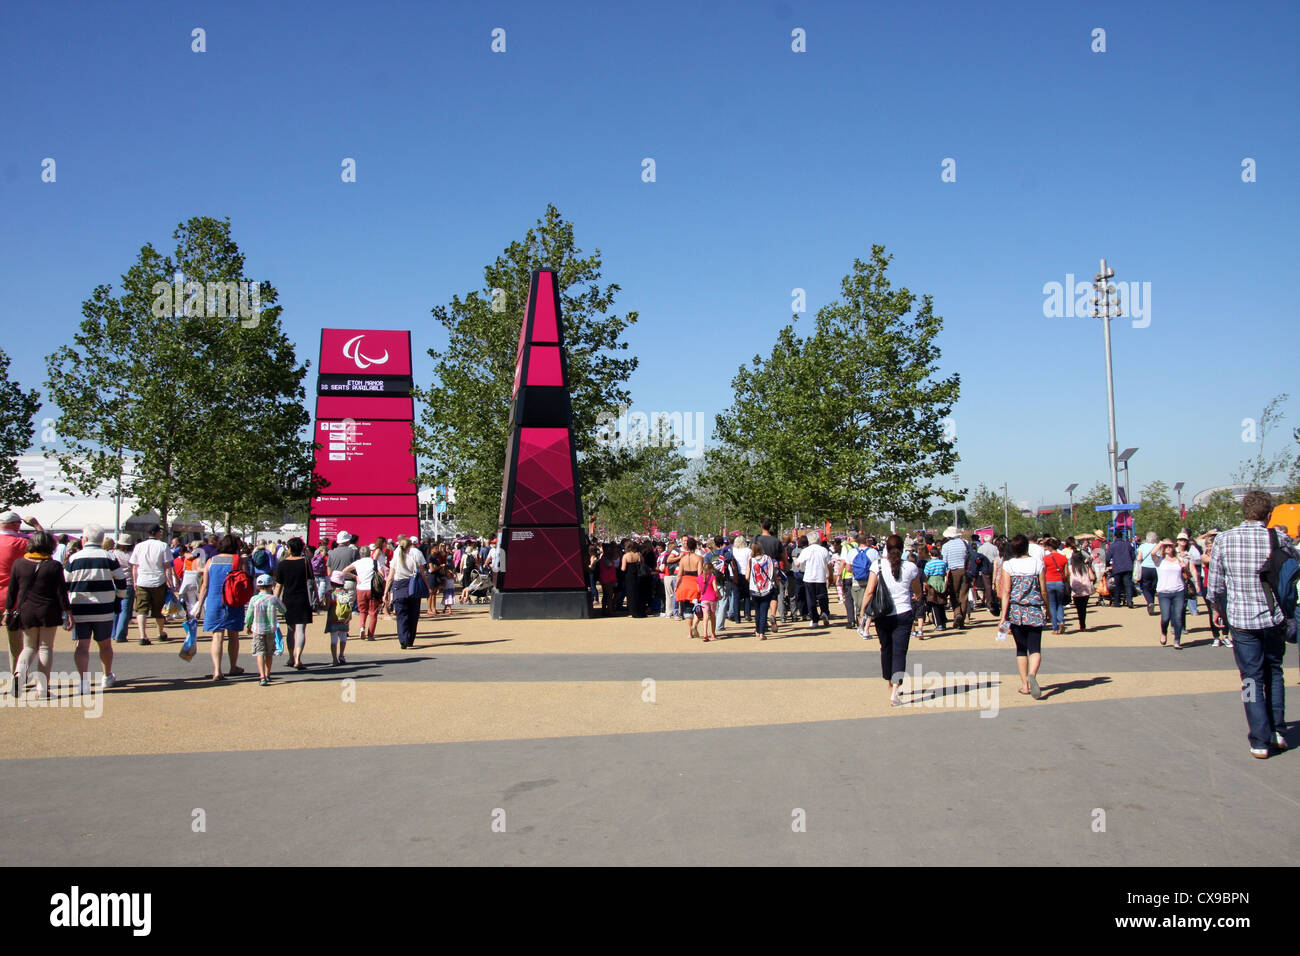 Les foules affluent vers le parc olympique durant les Jeux Paralympiques de Londres 2012. Banque D'Images